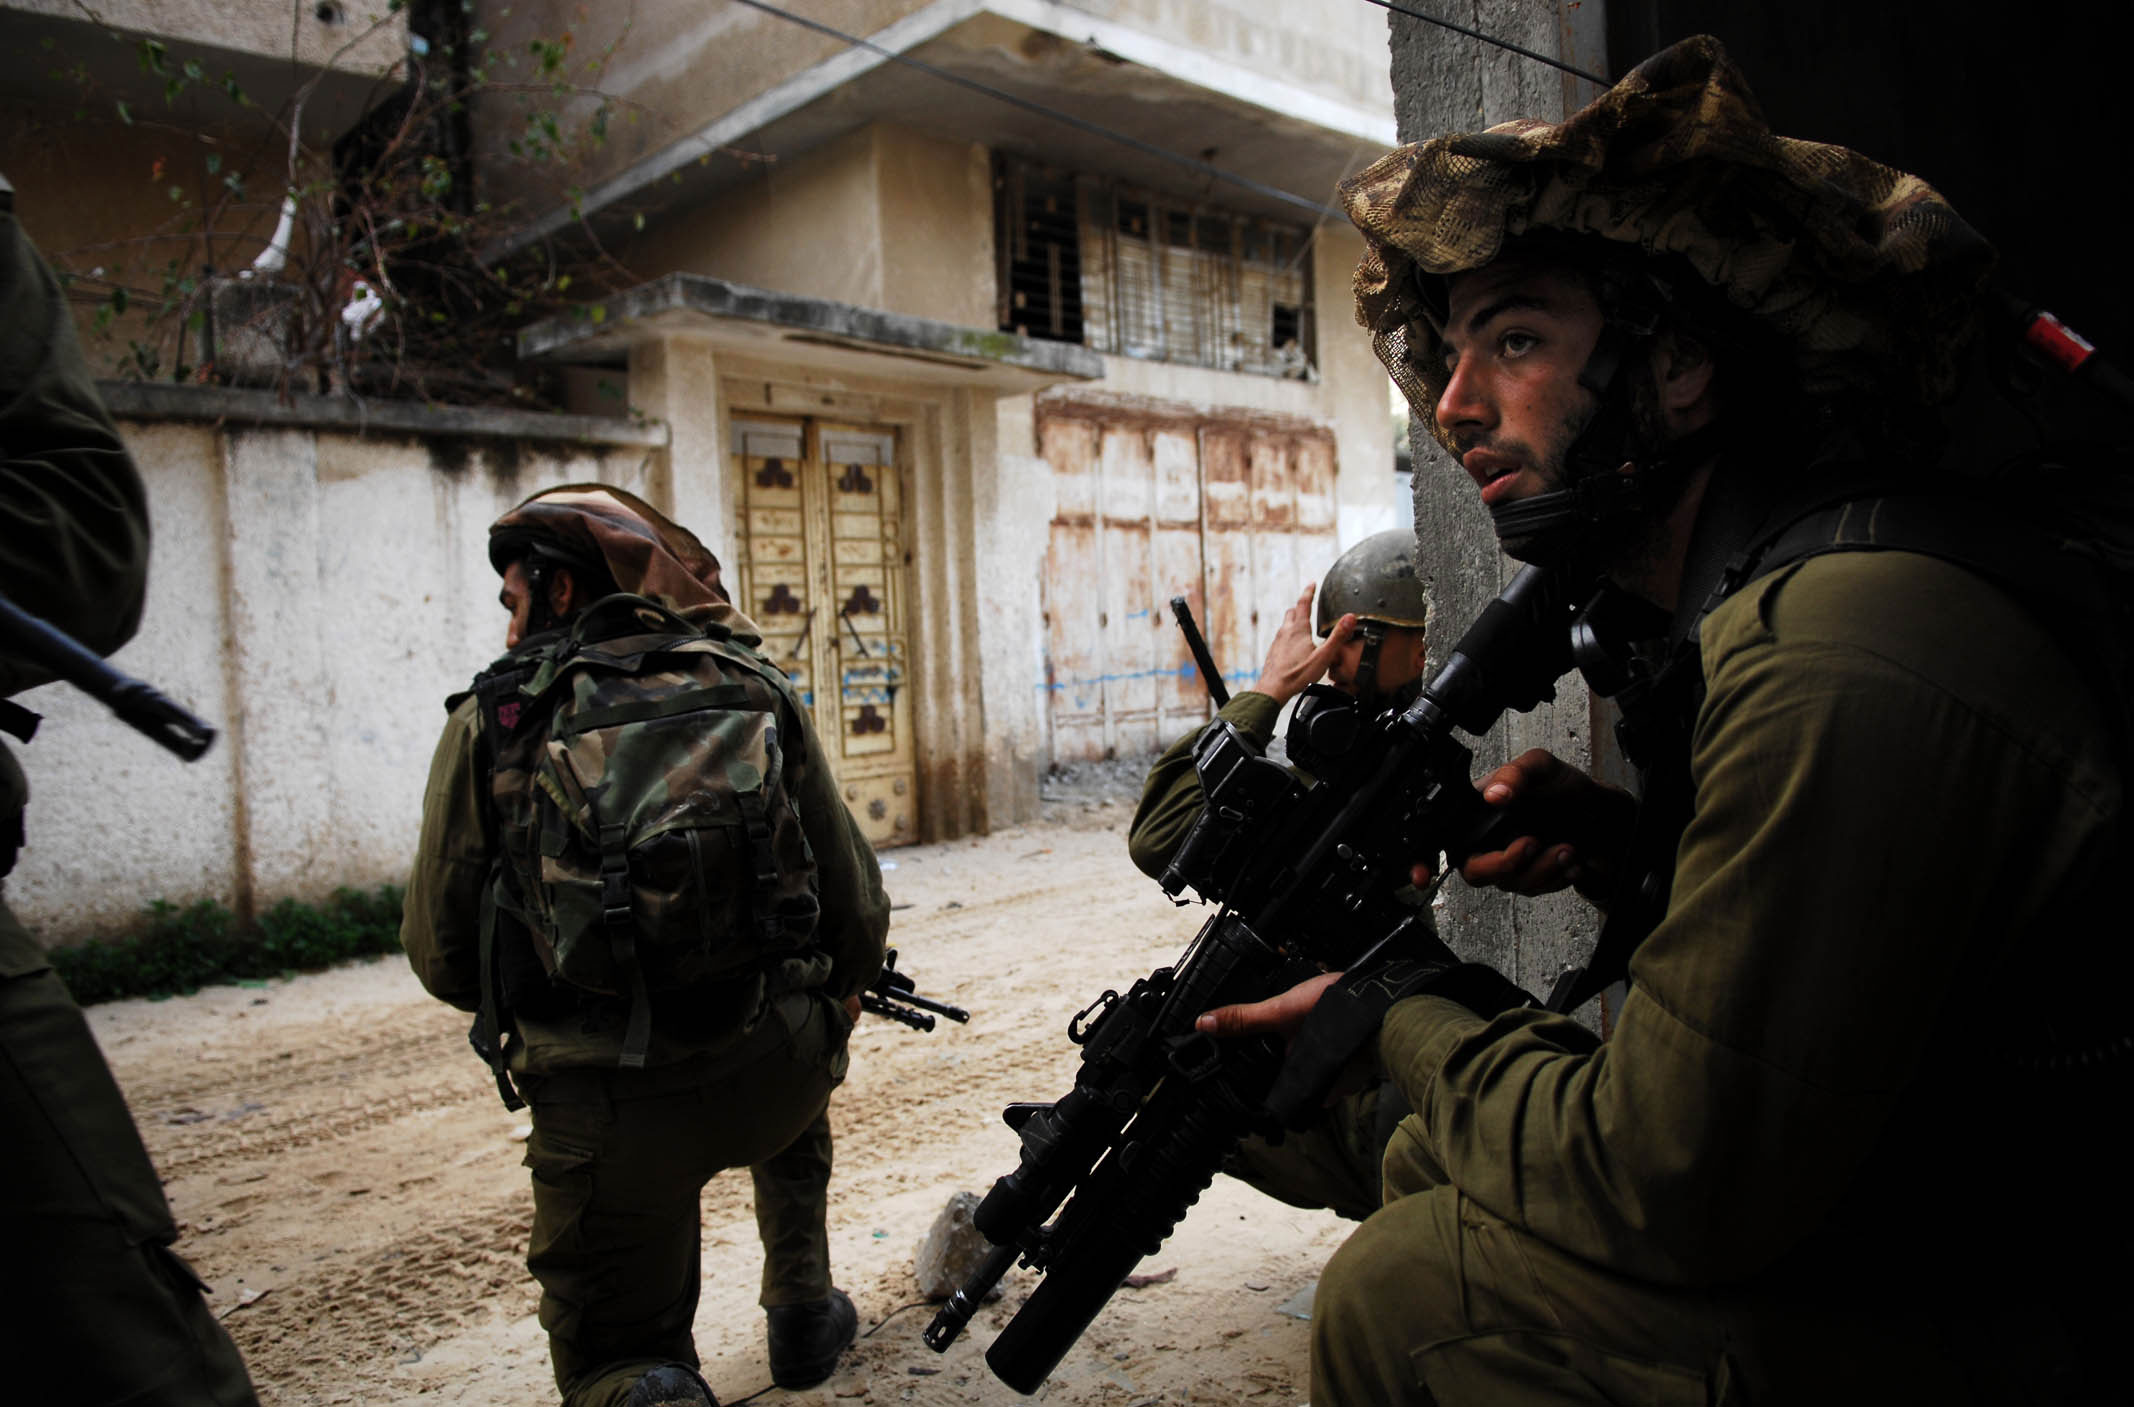 الإعلام الإسرائيلي يرجح وقوف حماس وراء اختفاء المستوطنين وحركة حماس ما تزال صامتة  (تحليل إخباري)